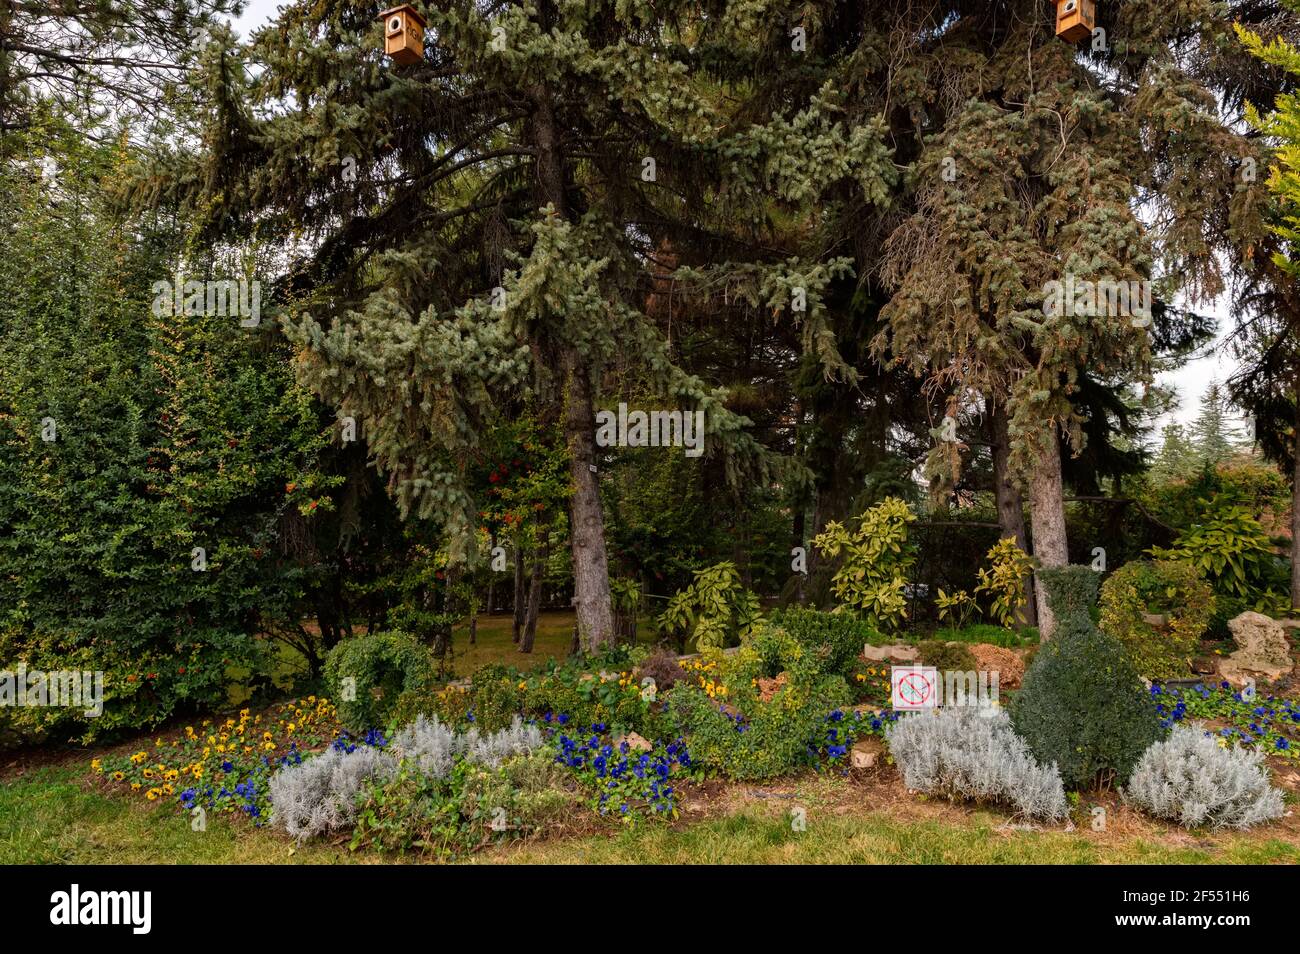 Photo d'un beau jardin avec de grands pins décoratifs et de petits arbres, chemin de tuiles et fleurs fleuries. Conception de paysage. Boîtes à oiseaux sur la branche Banque D'Images